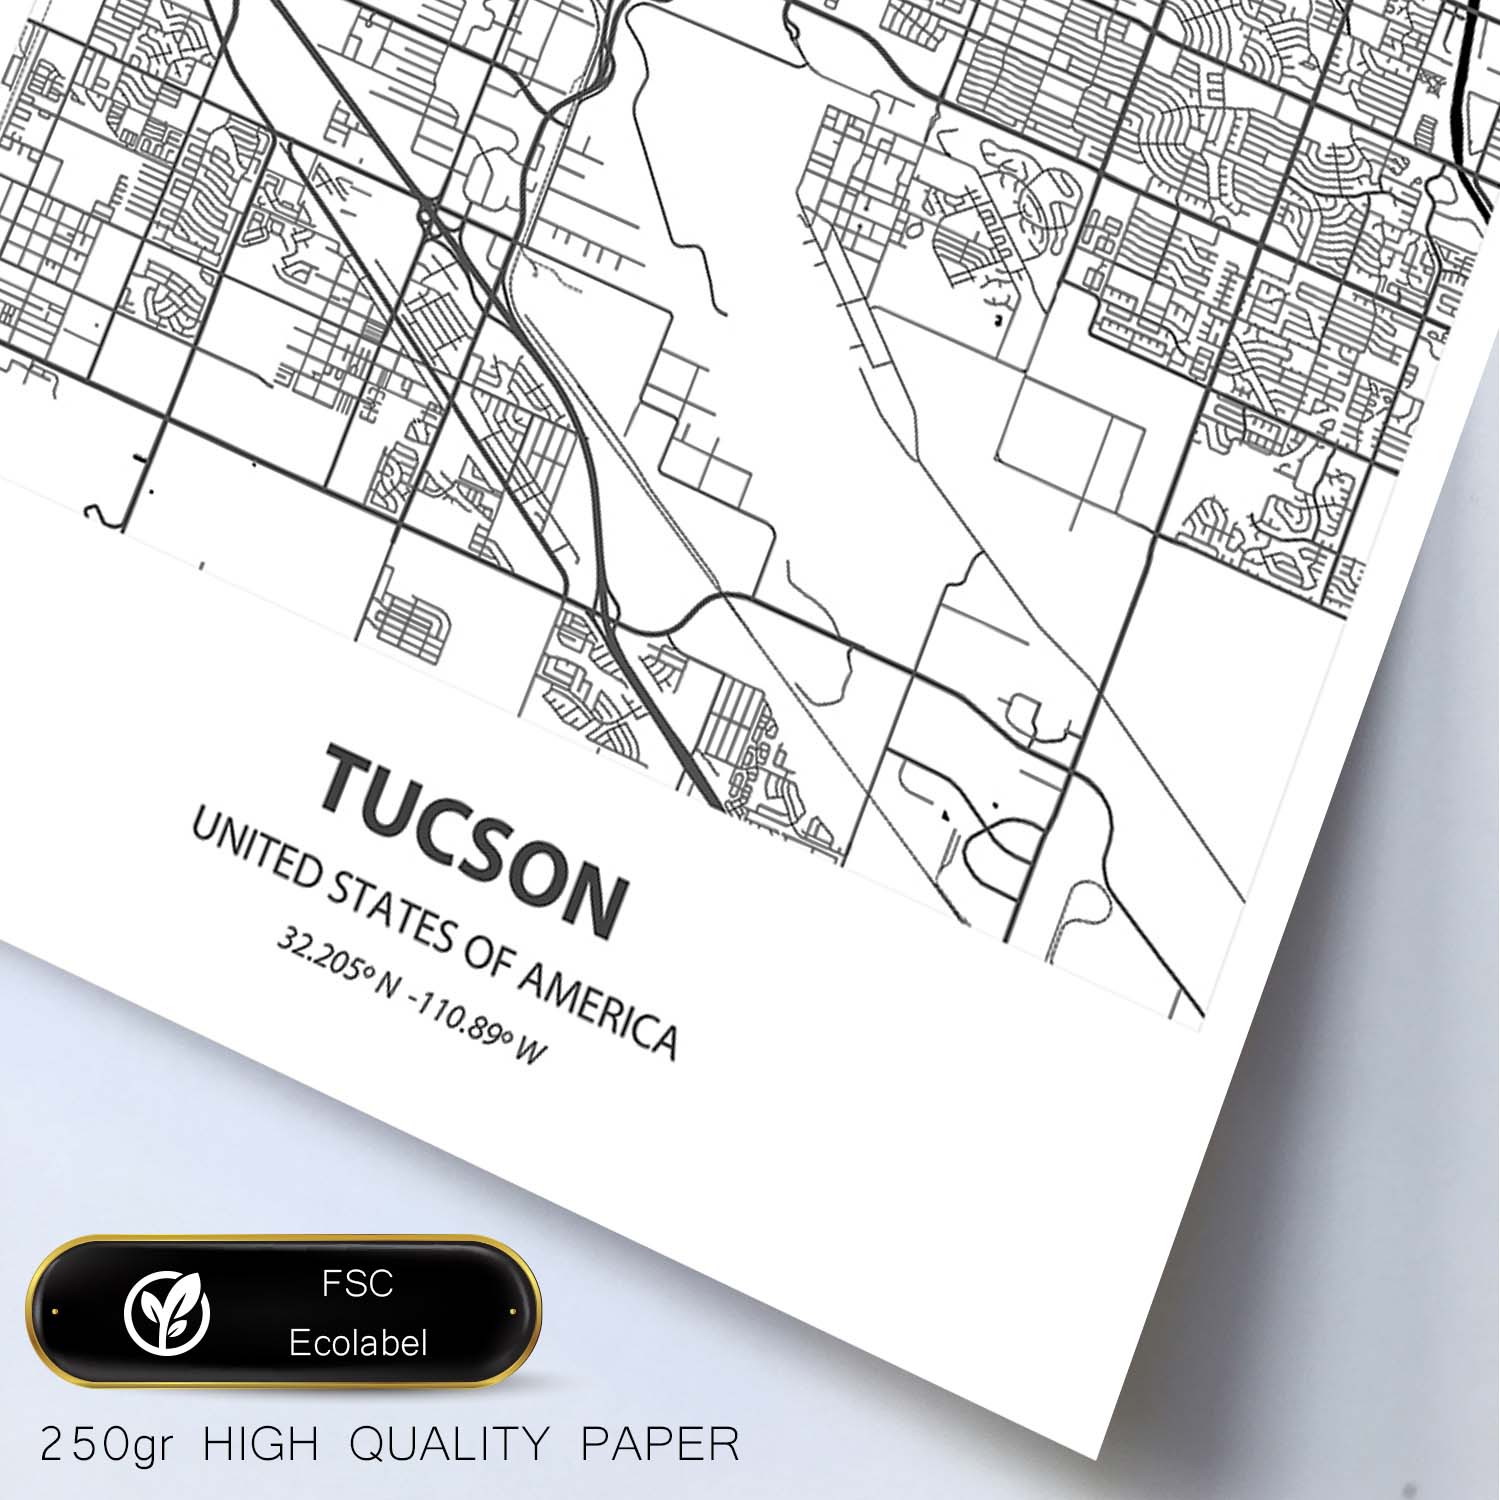 Poster con mapa de Tucson - USA. Láminas de ciudades de Estados Unidos con mares y ríos en color negro.-Artwork-Nacnic-Nacnic Estudio SL